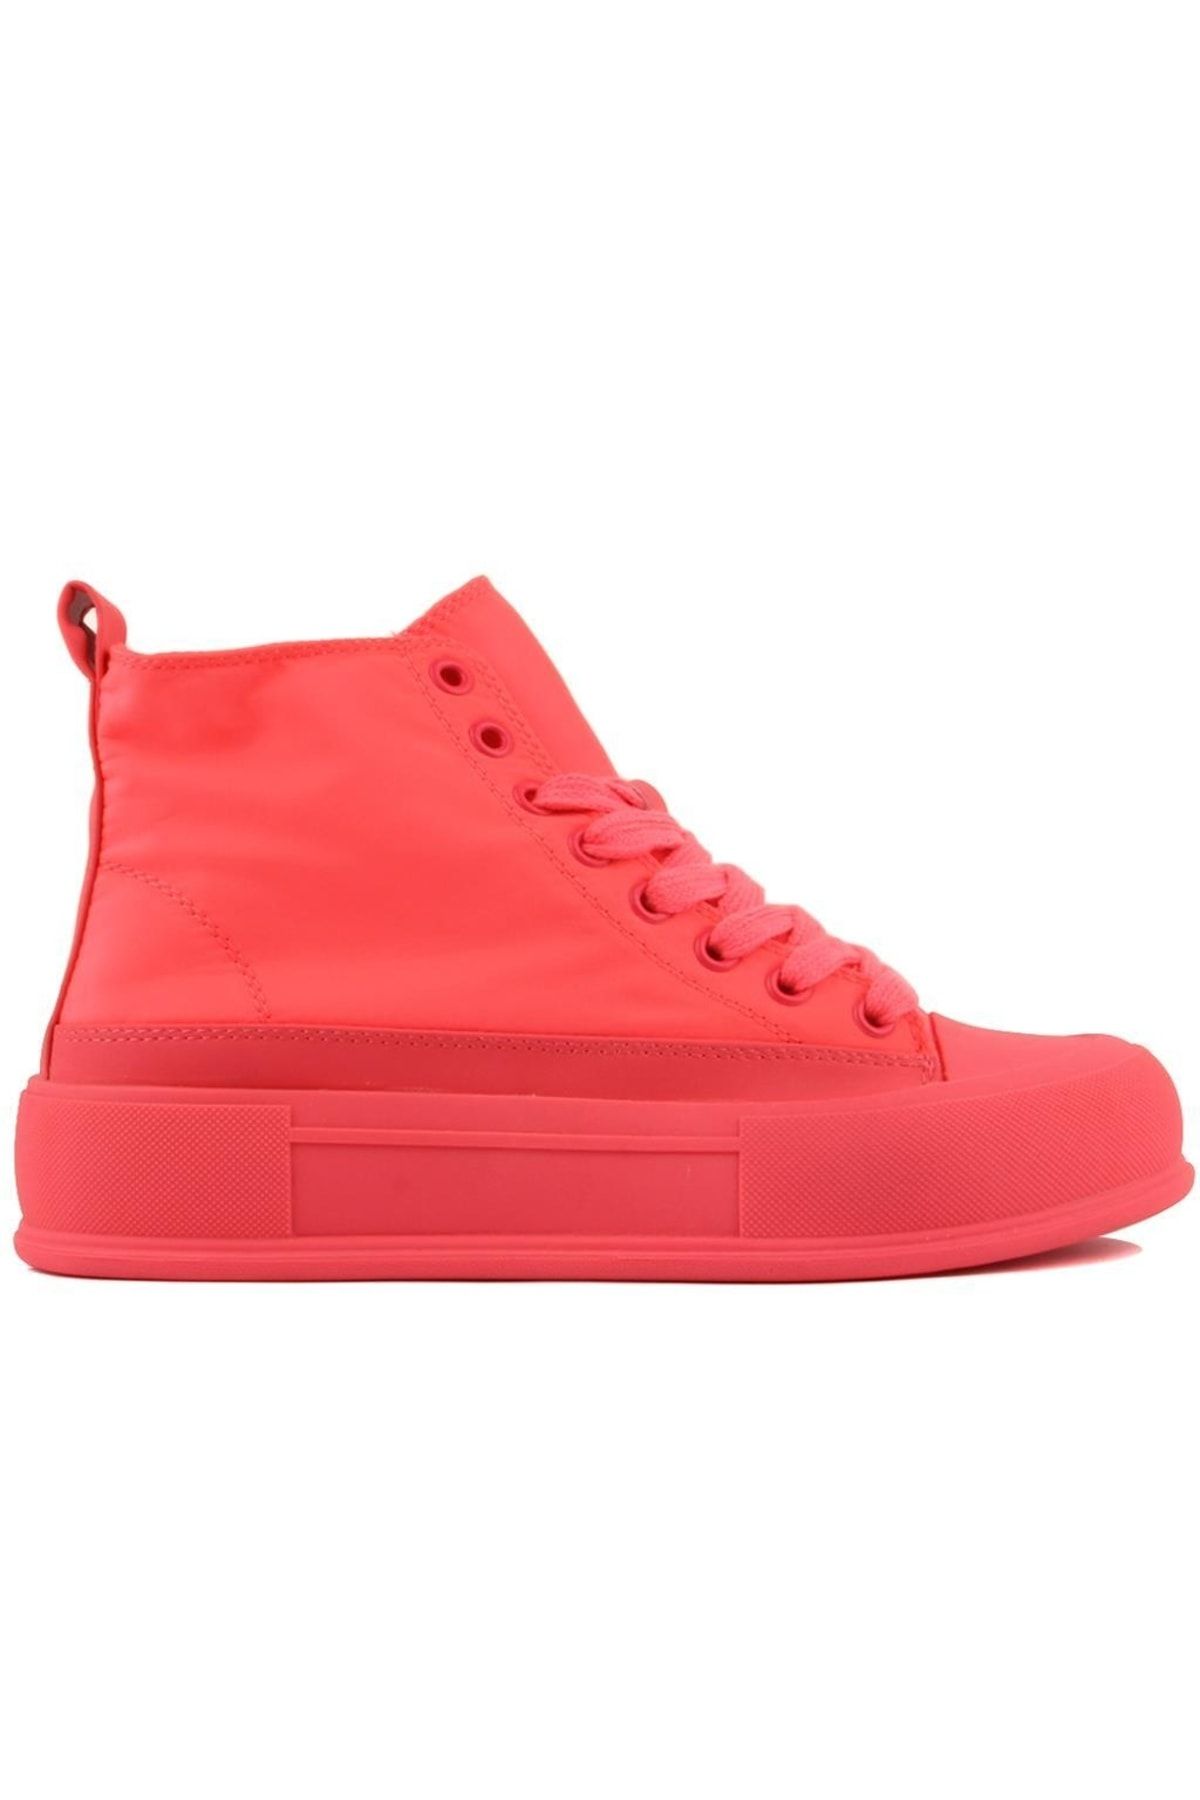 Sail Lakers Guja - Kırmızı Renk Bağcıklı Kadın Sneaker